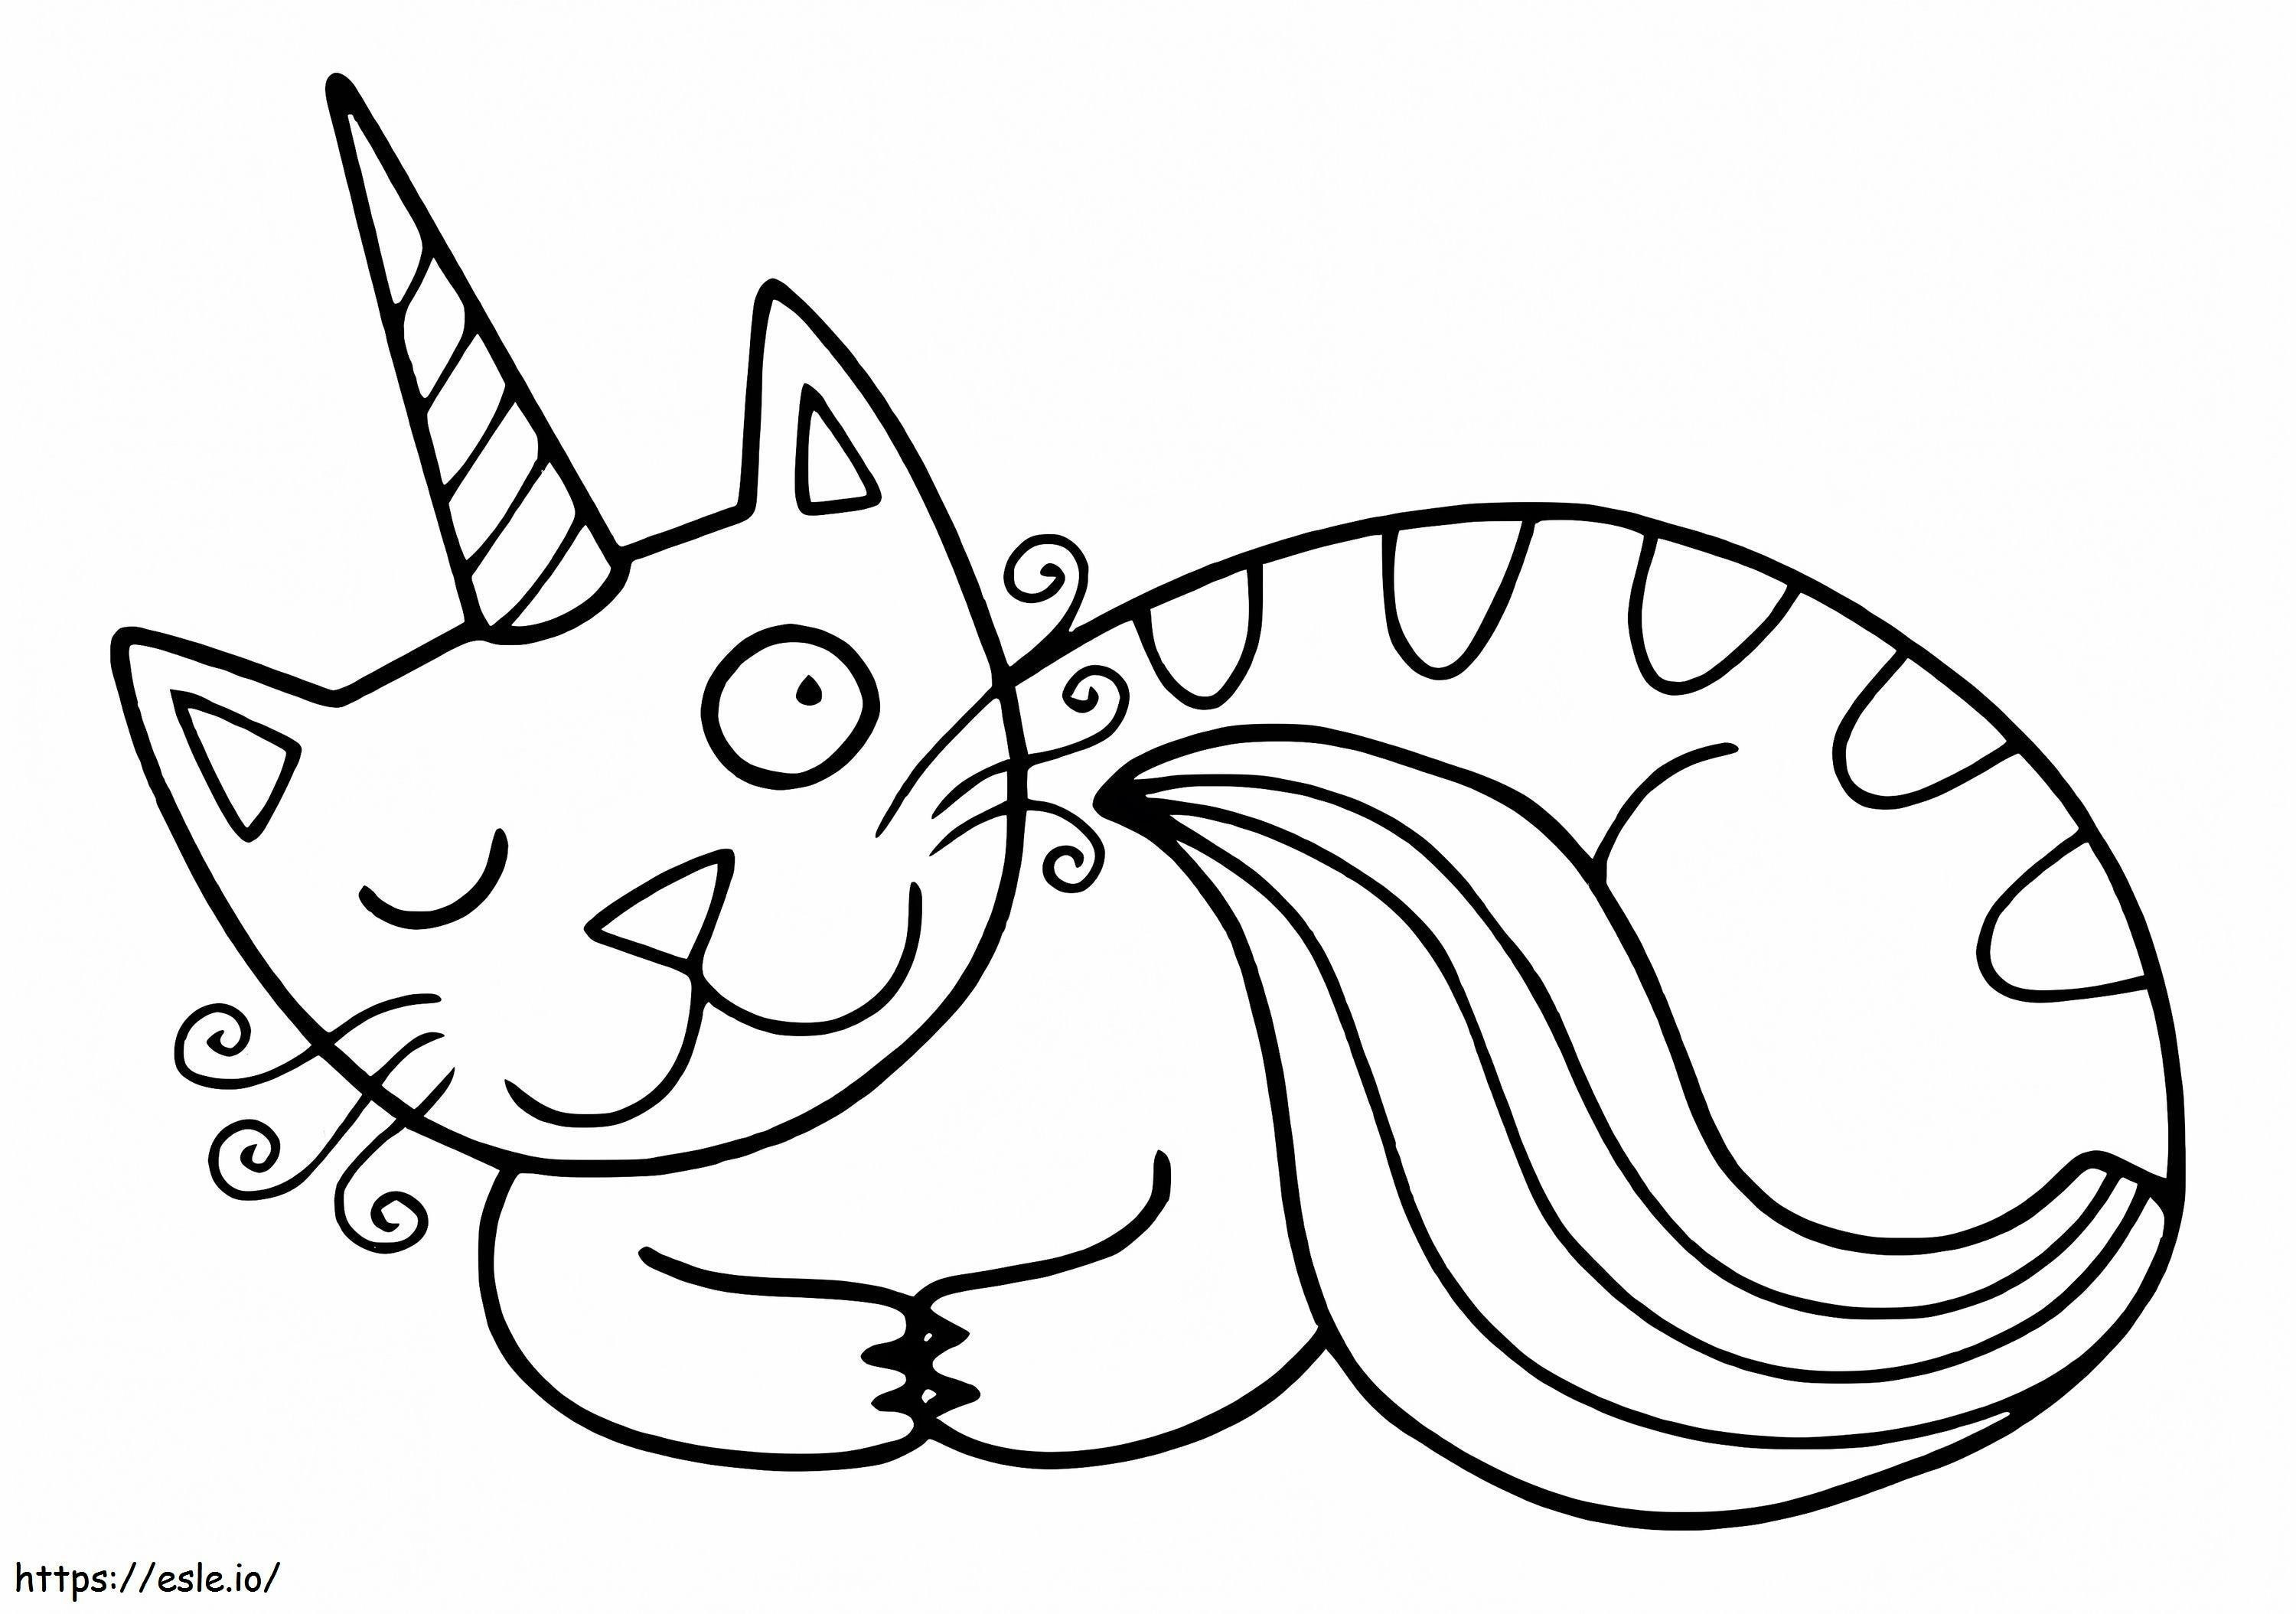 Komik Tek Boynuzlu Kedi boyama